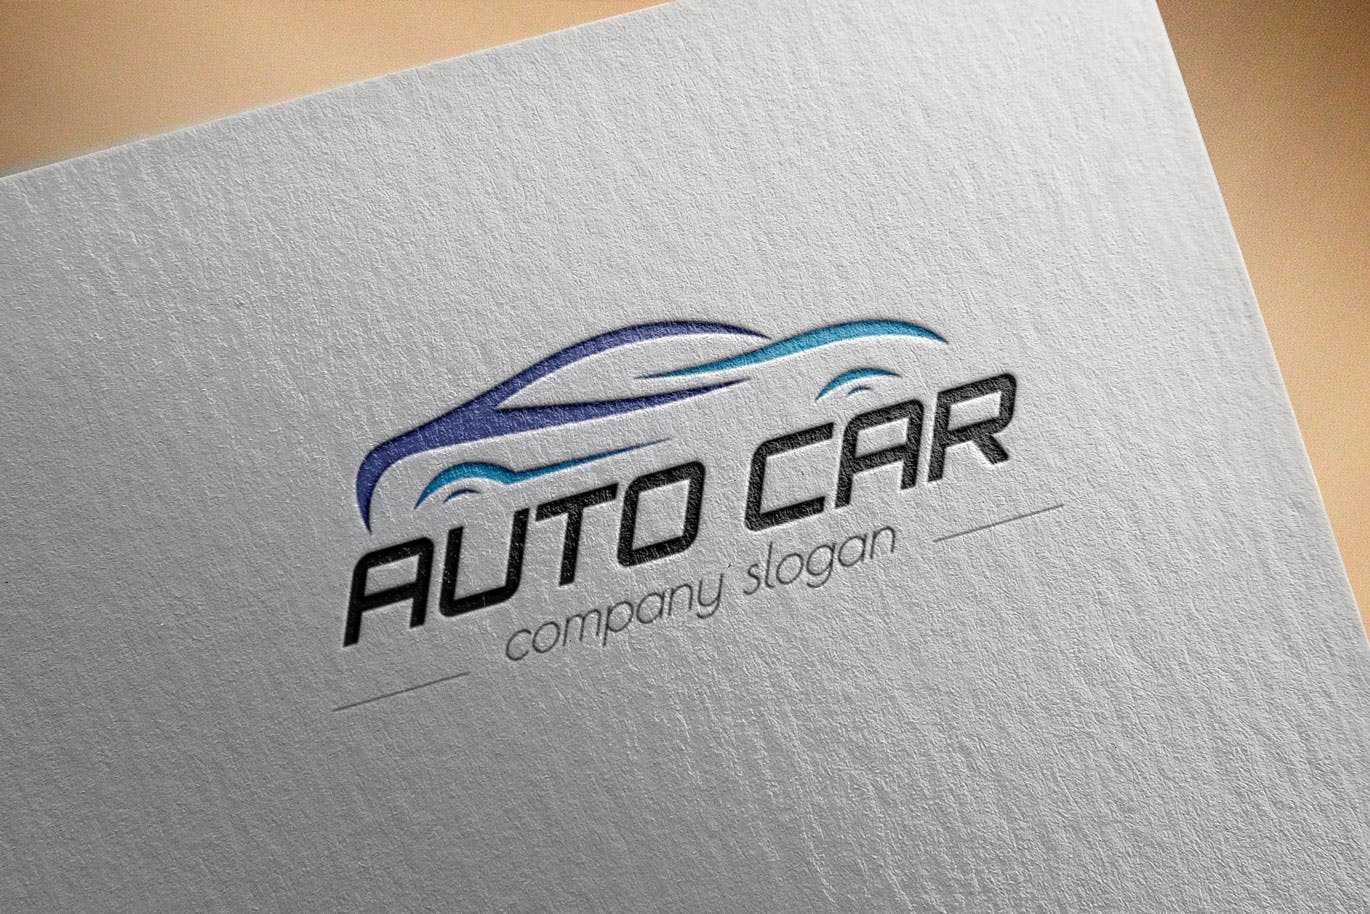 汽车相关企业品牌Logo设计16设计网精选模板 Auto Car Business Logo Template插图(2)